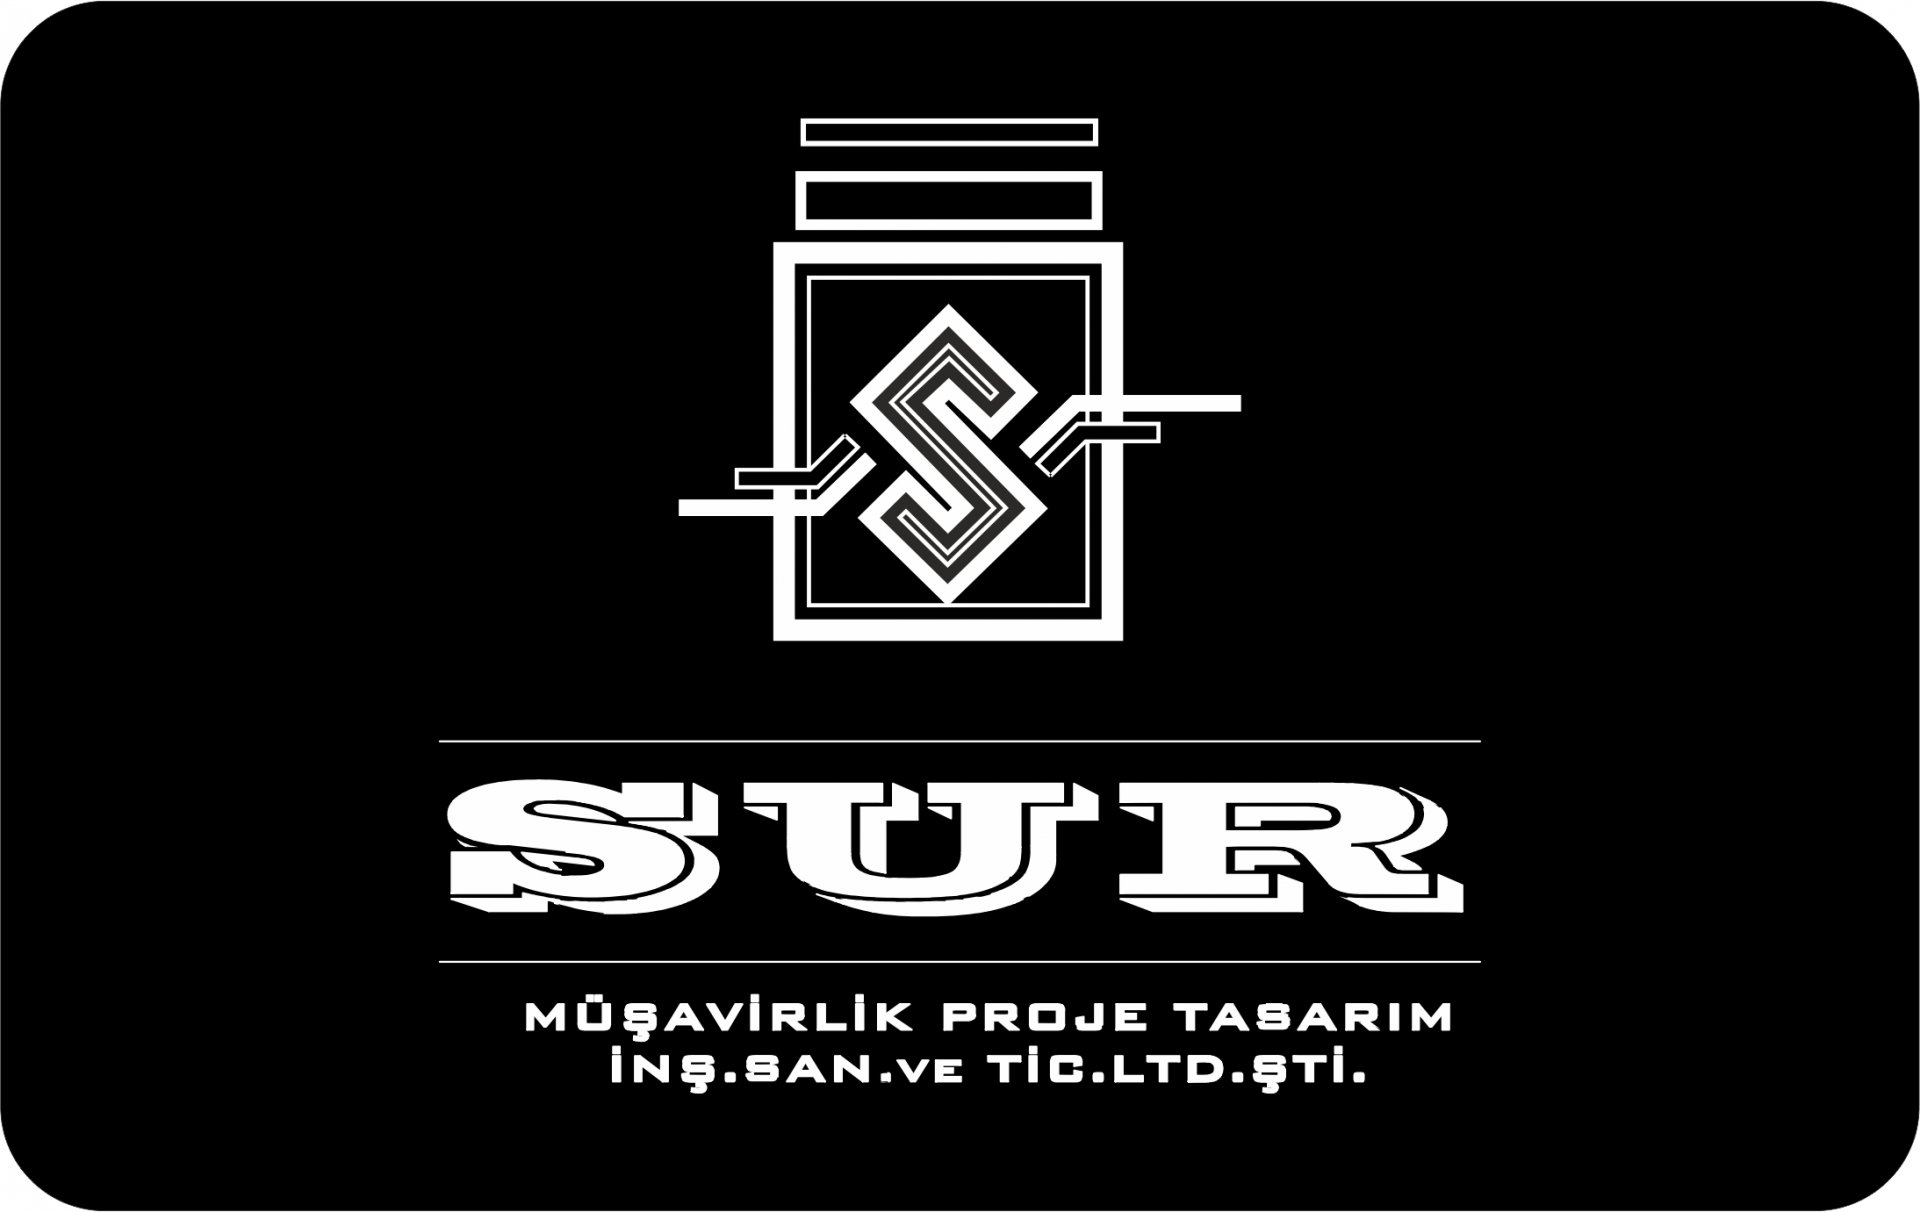 KEMAL Sencer YAVUZ - Sur Müşavirlik Proje Tasarım İnş. San. ve Tic. Ltd. Şti.